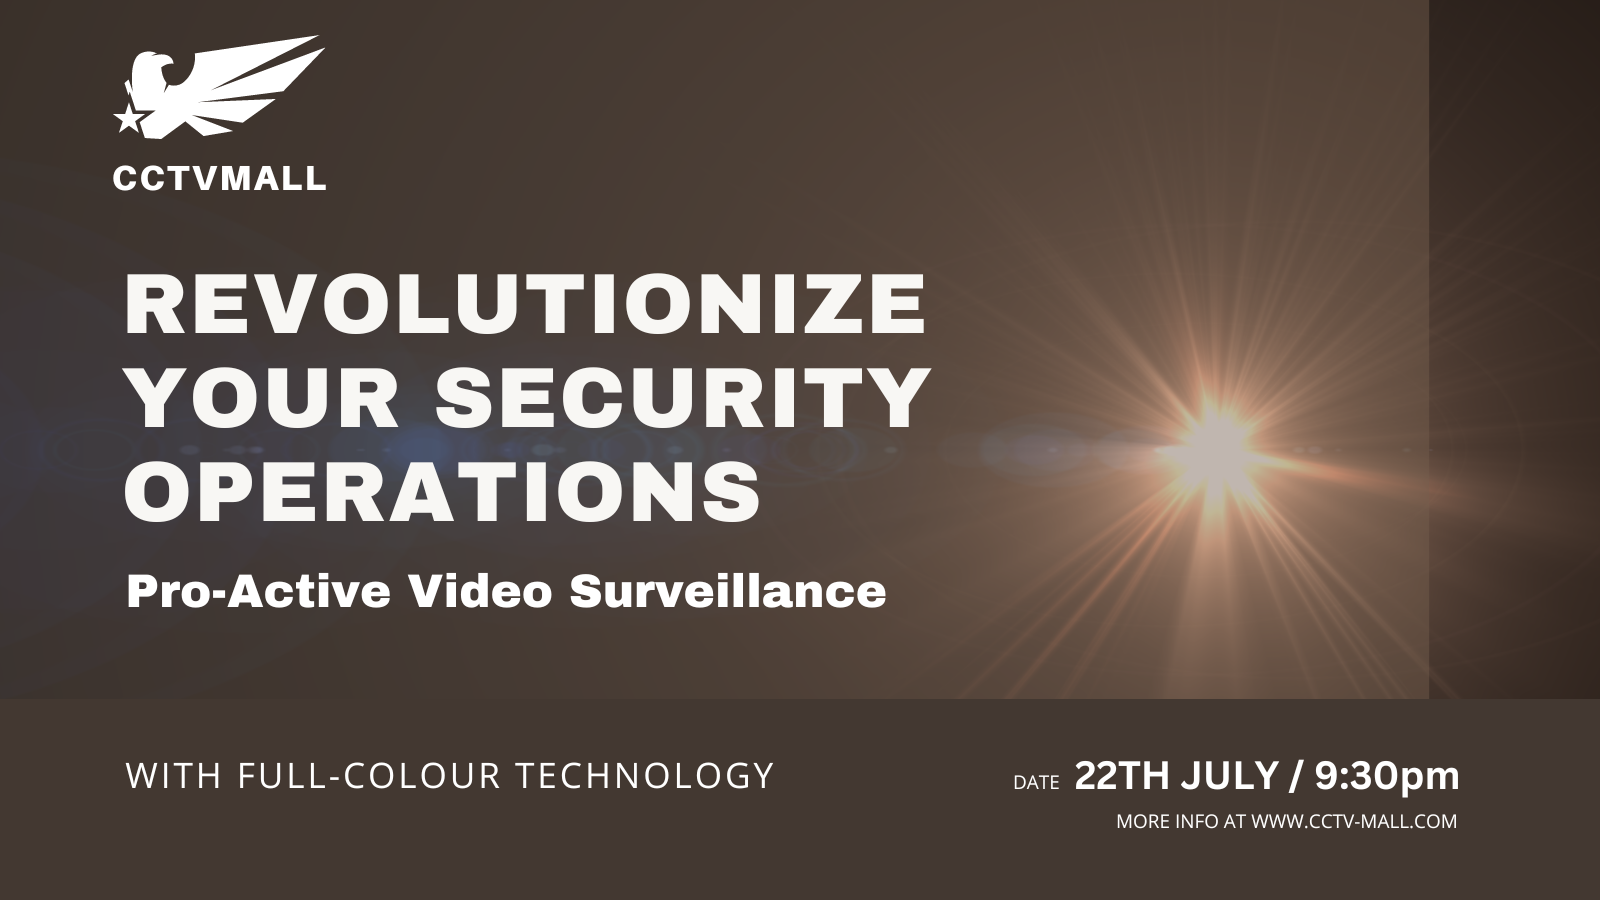 Pro-Active Video Surveillance